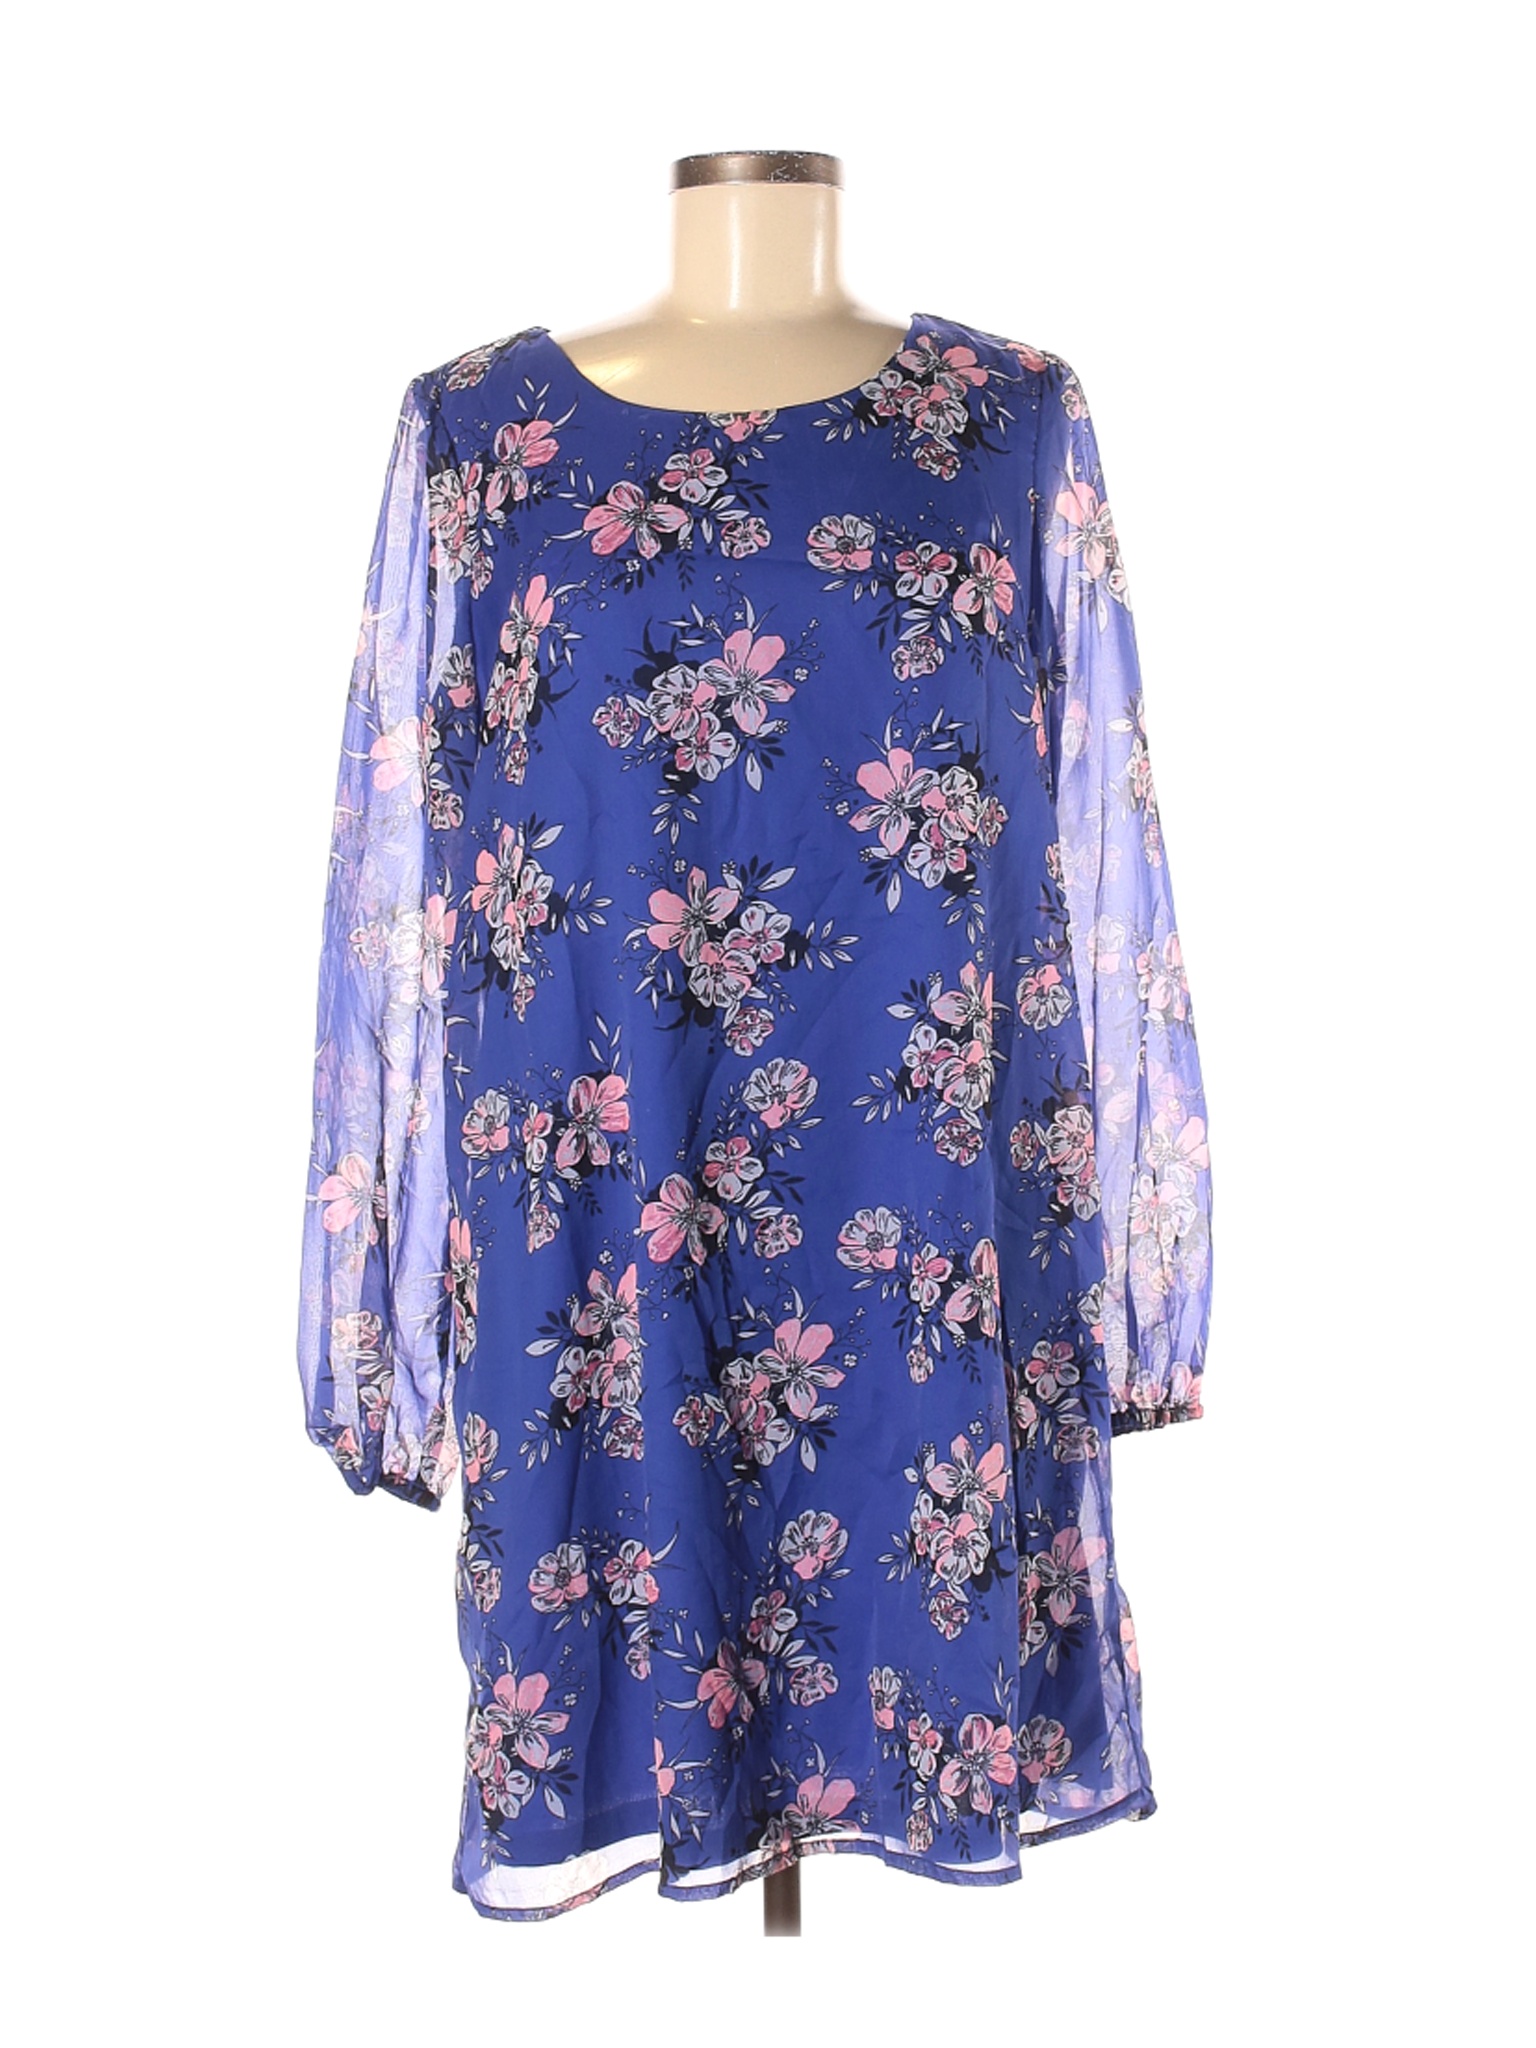 Charlotte Russe Women Blue Casual Dress M | eBay